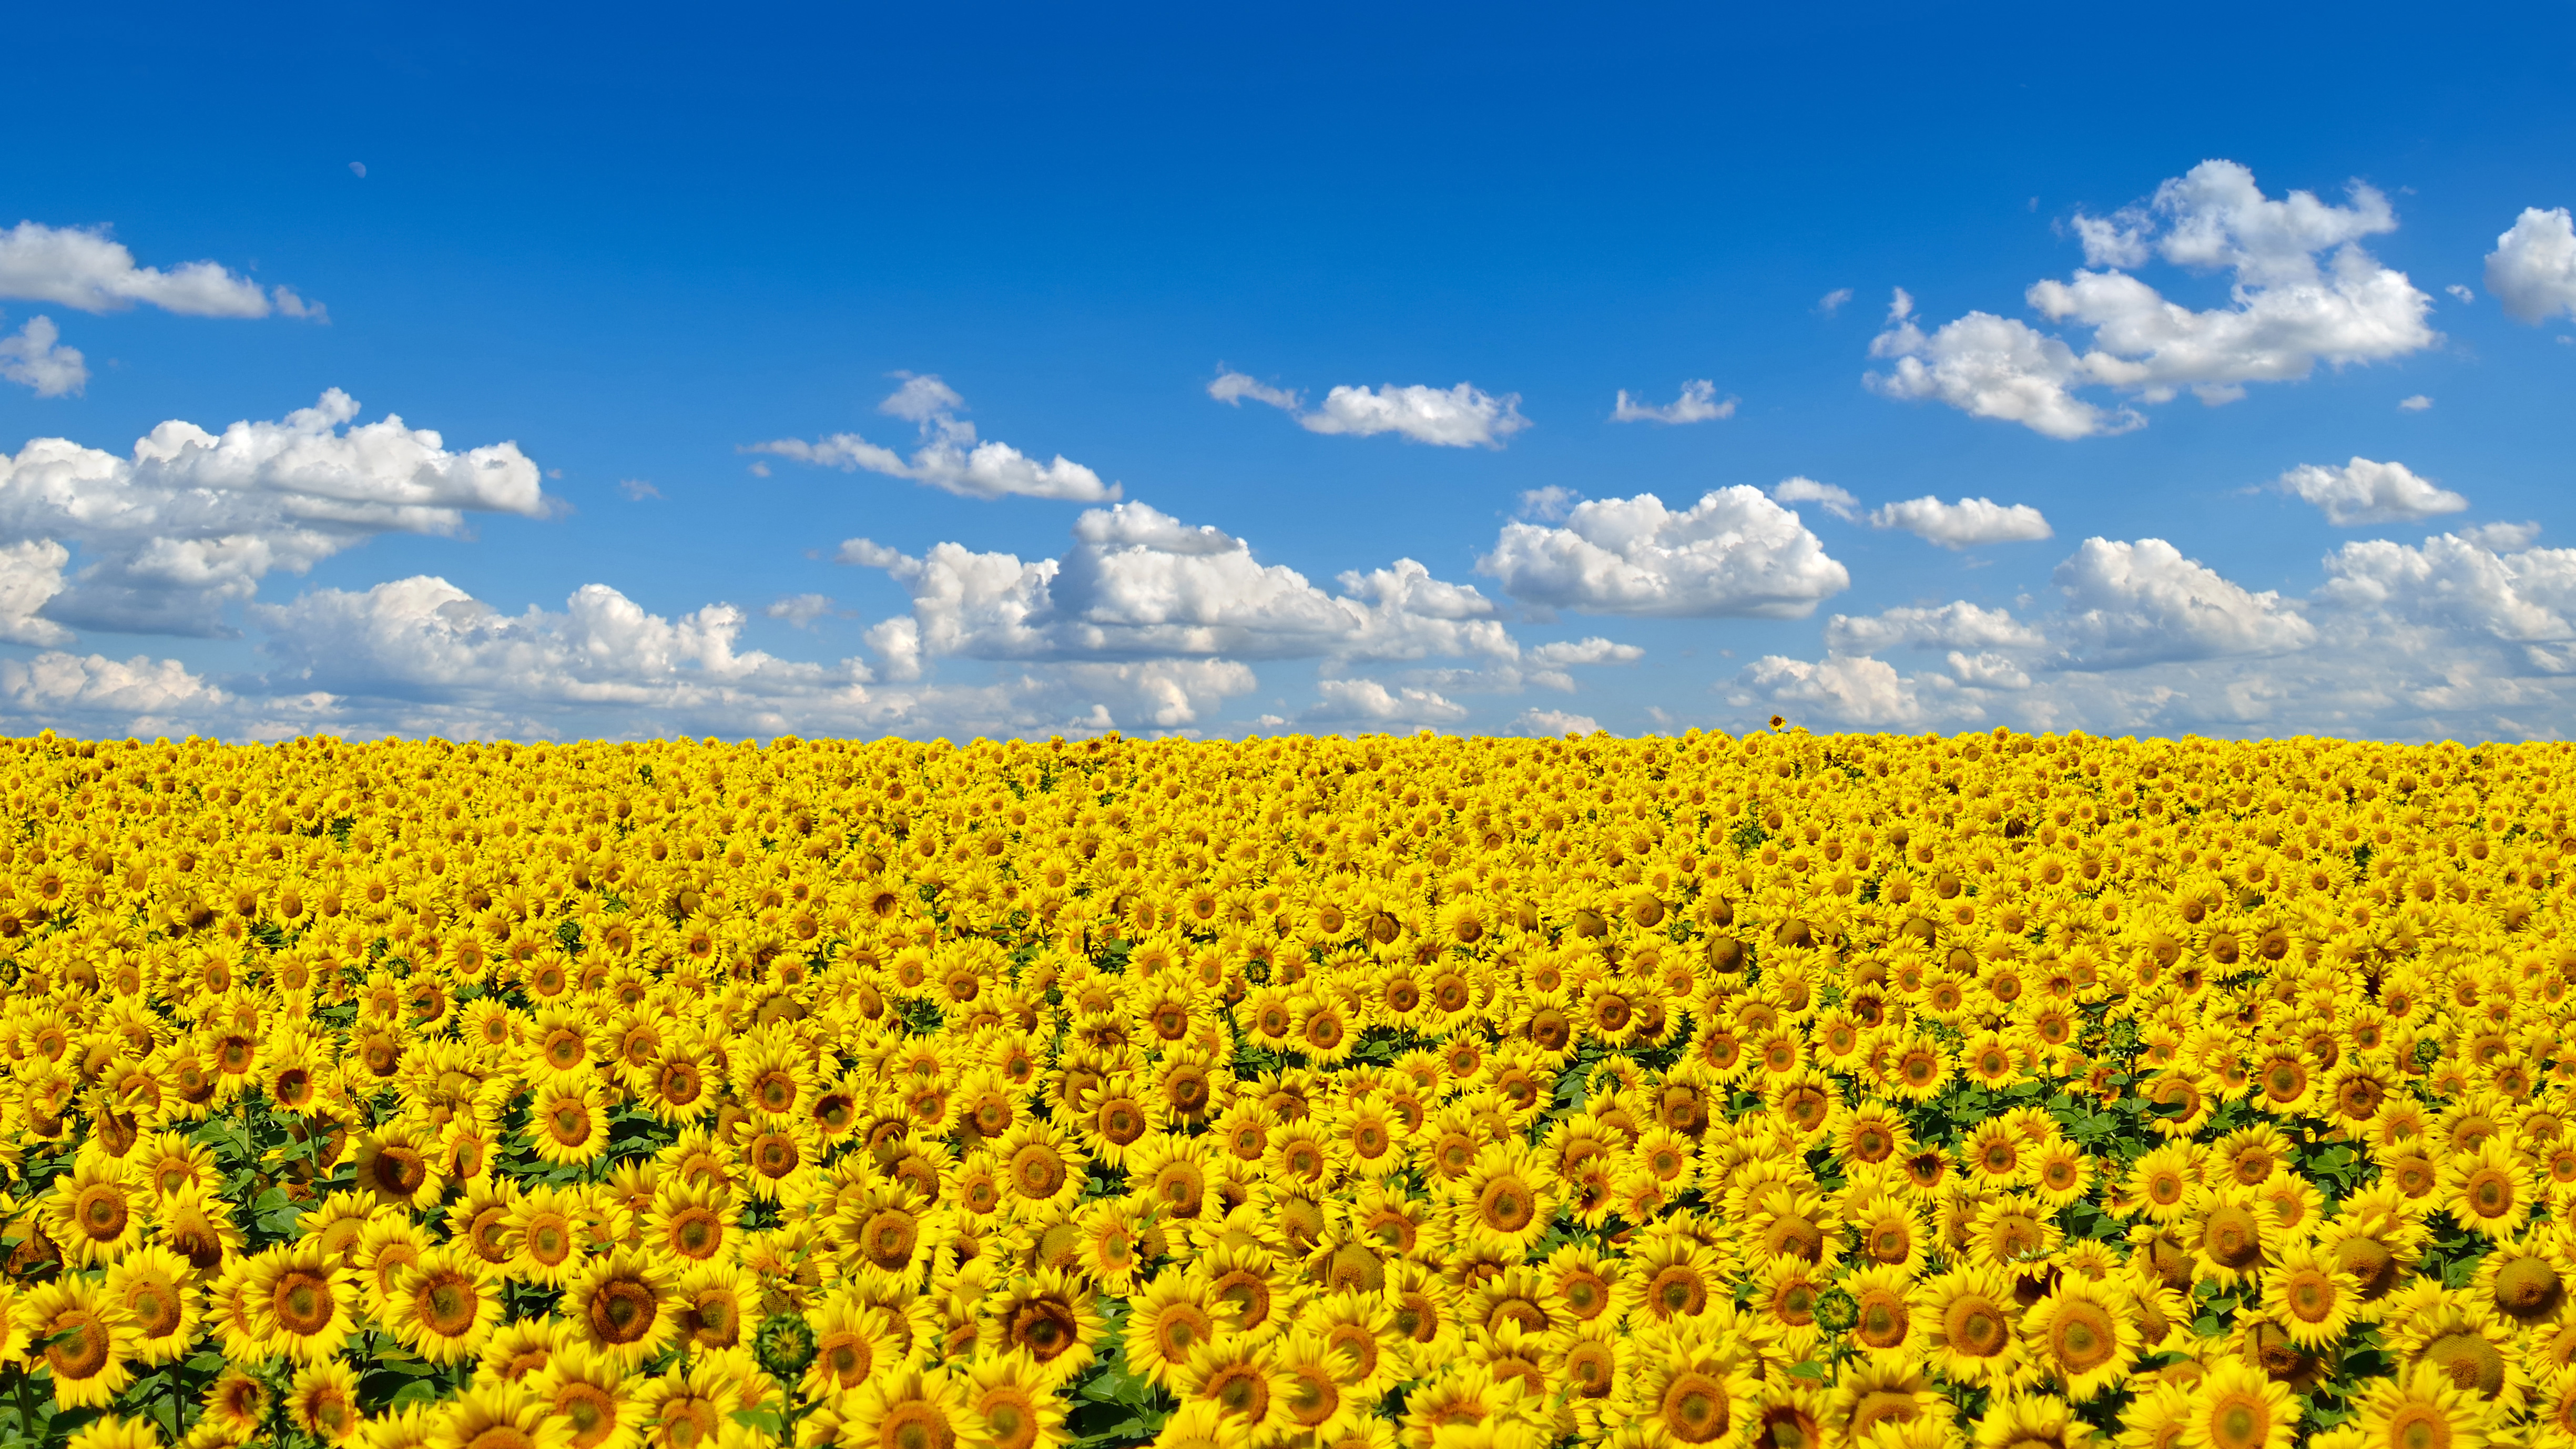 Làm cho màn hình điện thoại của bạn trở nên rực rỡ với những bức ảnh hoa hướng dương Ukraina tràn đầy tươi sáng, đẹp như mơ. Hoa hướng dương Ukraina được coi là biểu tượng của tình bạn, niềm hy vọng và năng lượng tích cực - một ý tưởng tuyệt vời cho một hình nền sáng tạo.